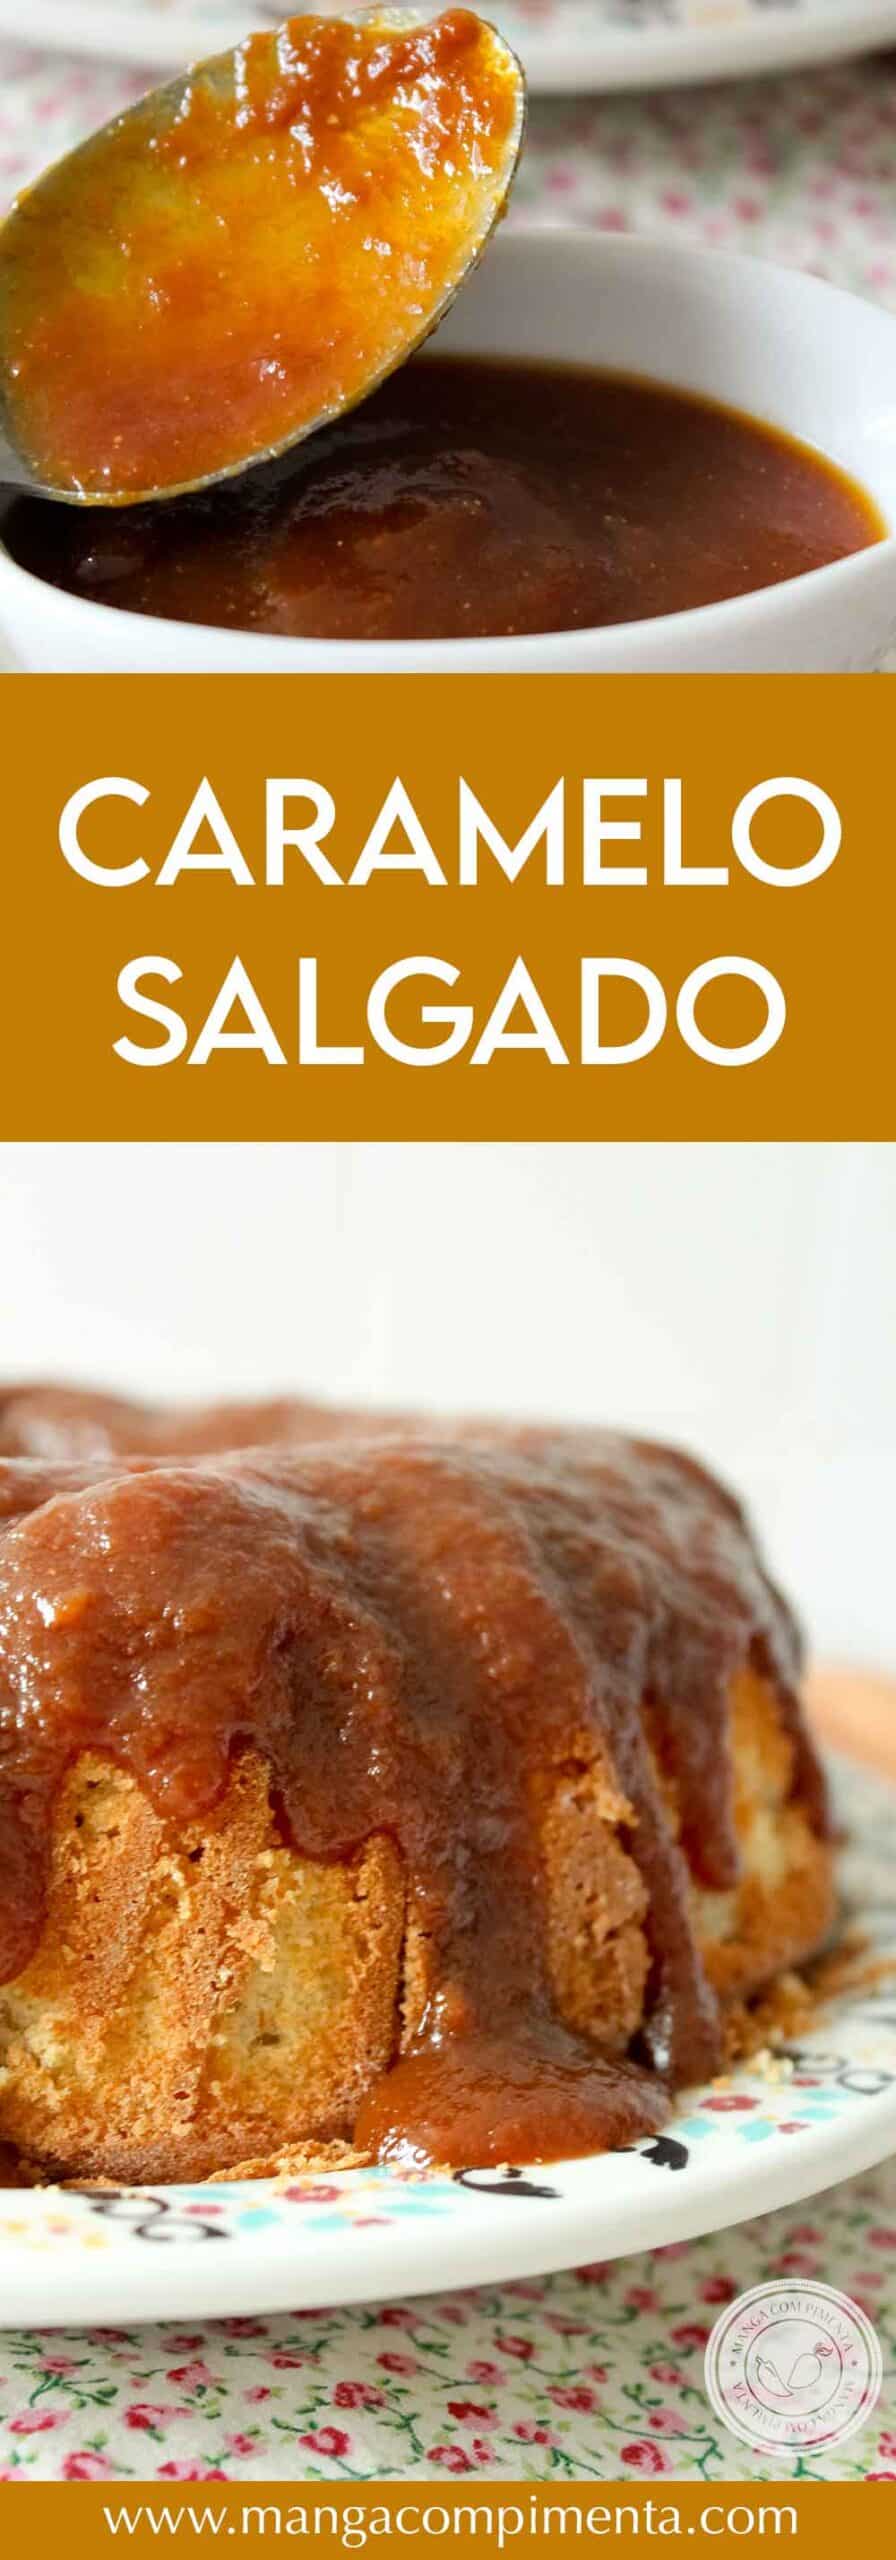 Receita de Caramelo Salgado - deixe seu bolo, torta, sorvete ou qualquer sobremesa mais gostosa!